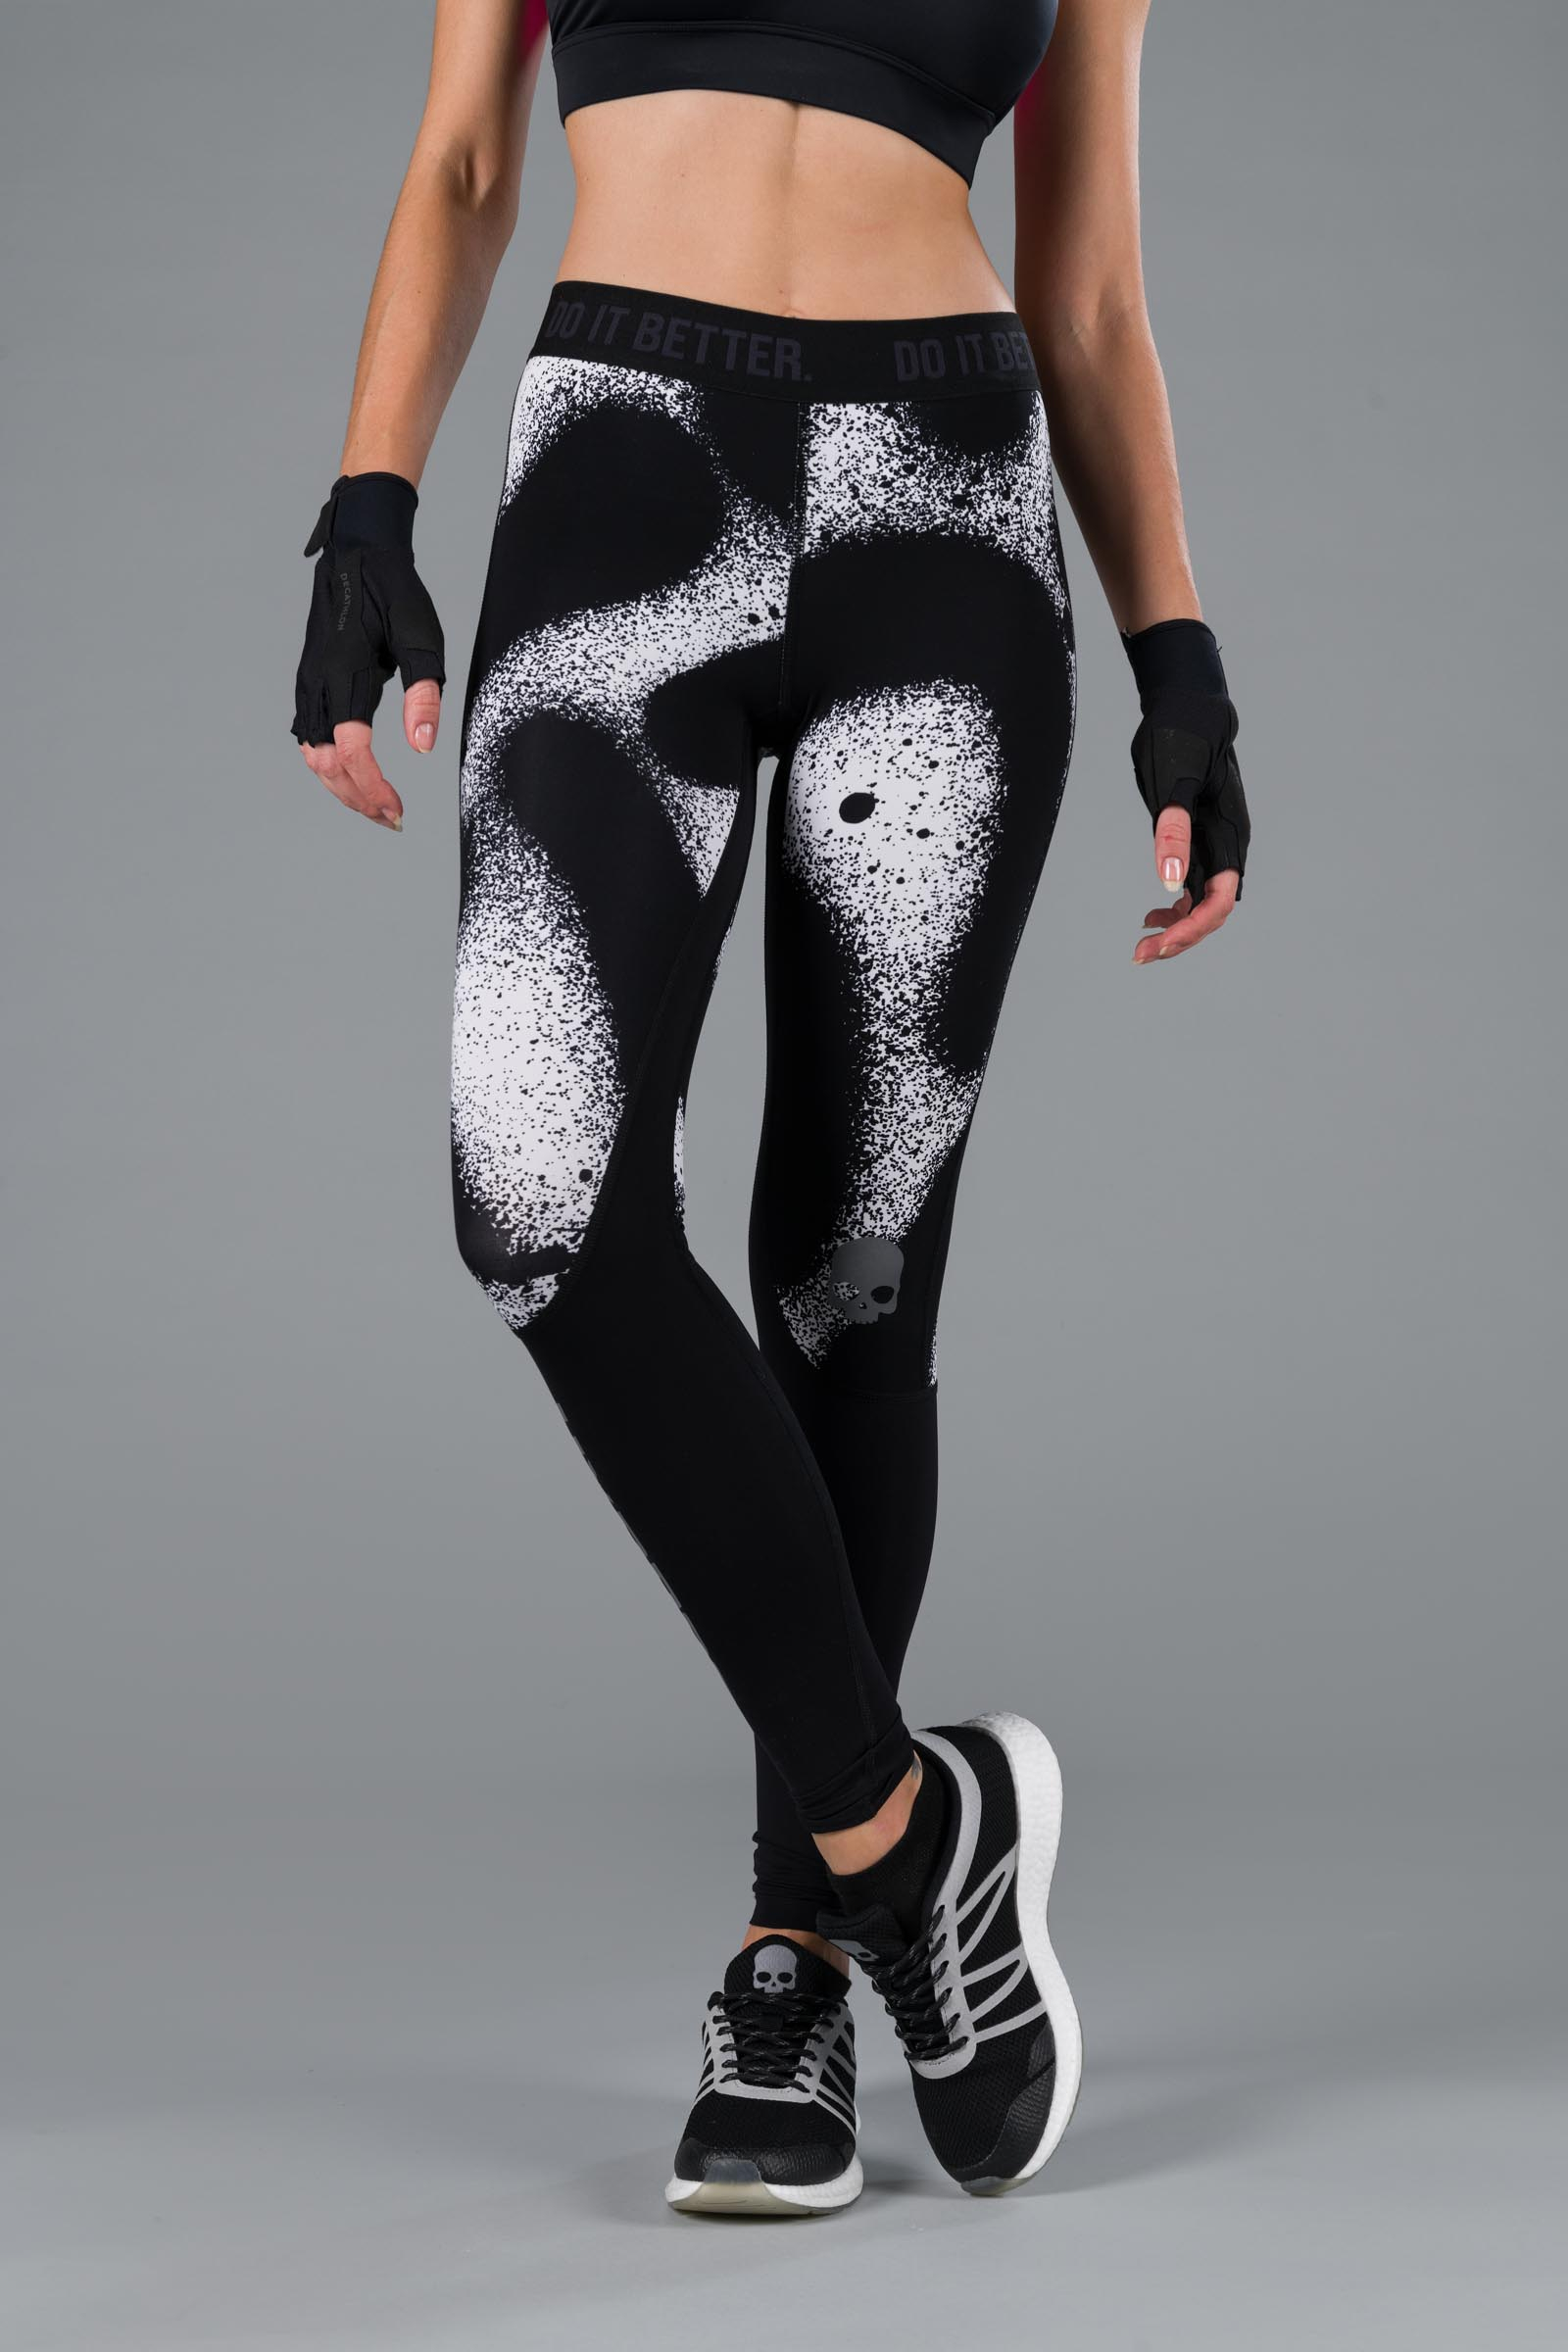 SPRAY LEGGINGS - WHITE/BLACK - Hydrogen - Luxury Sportwear